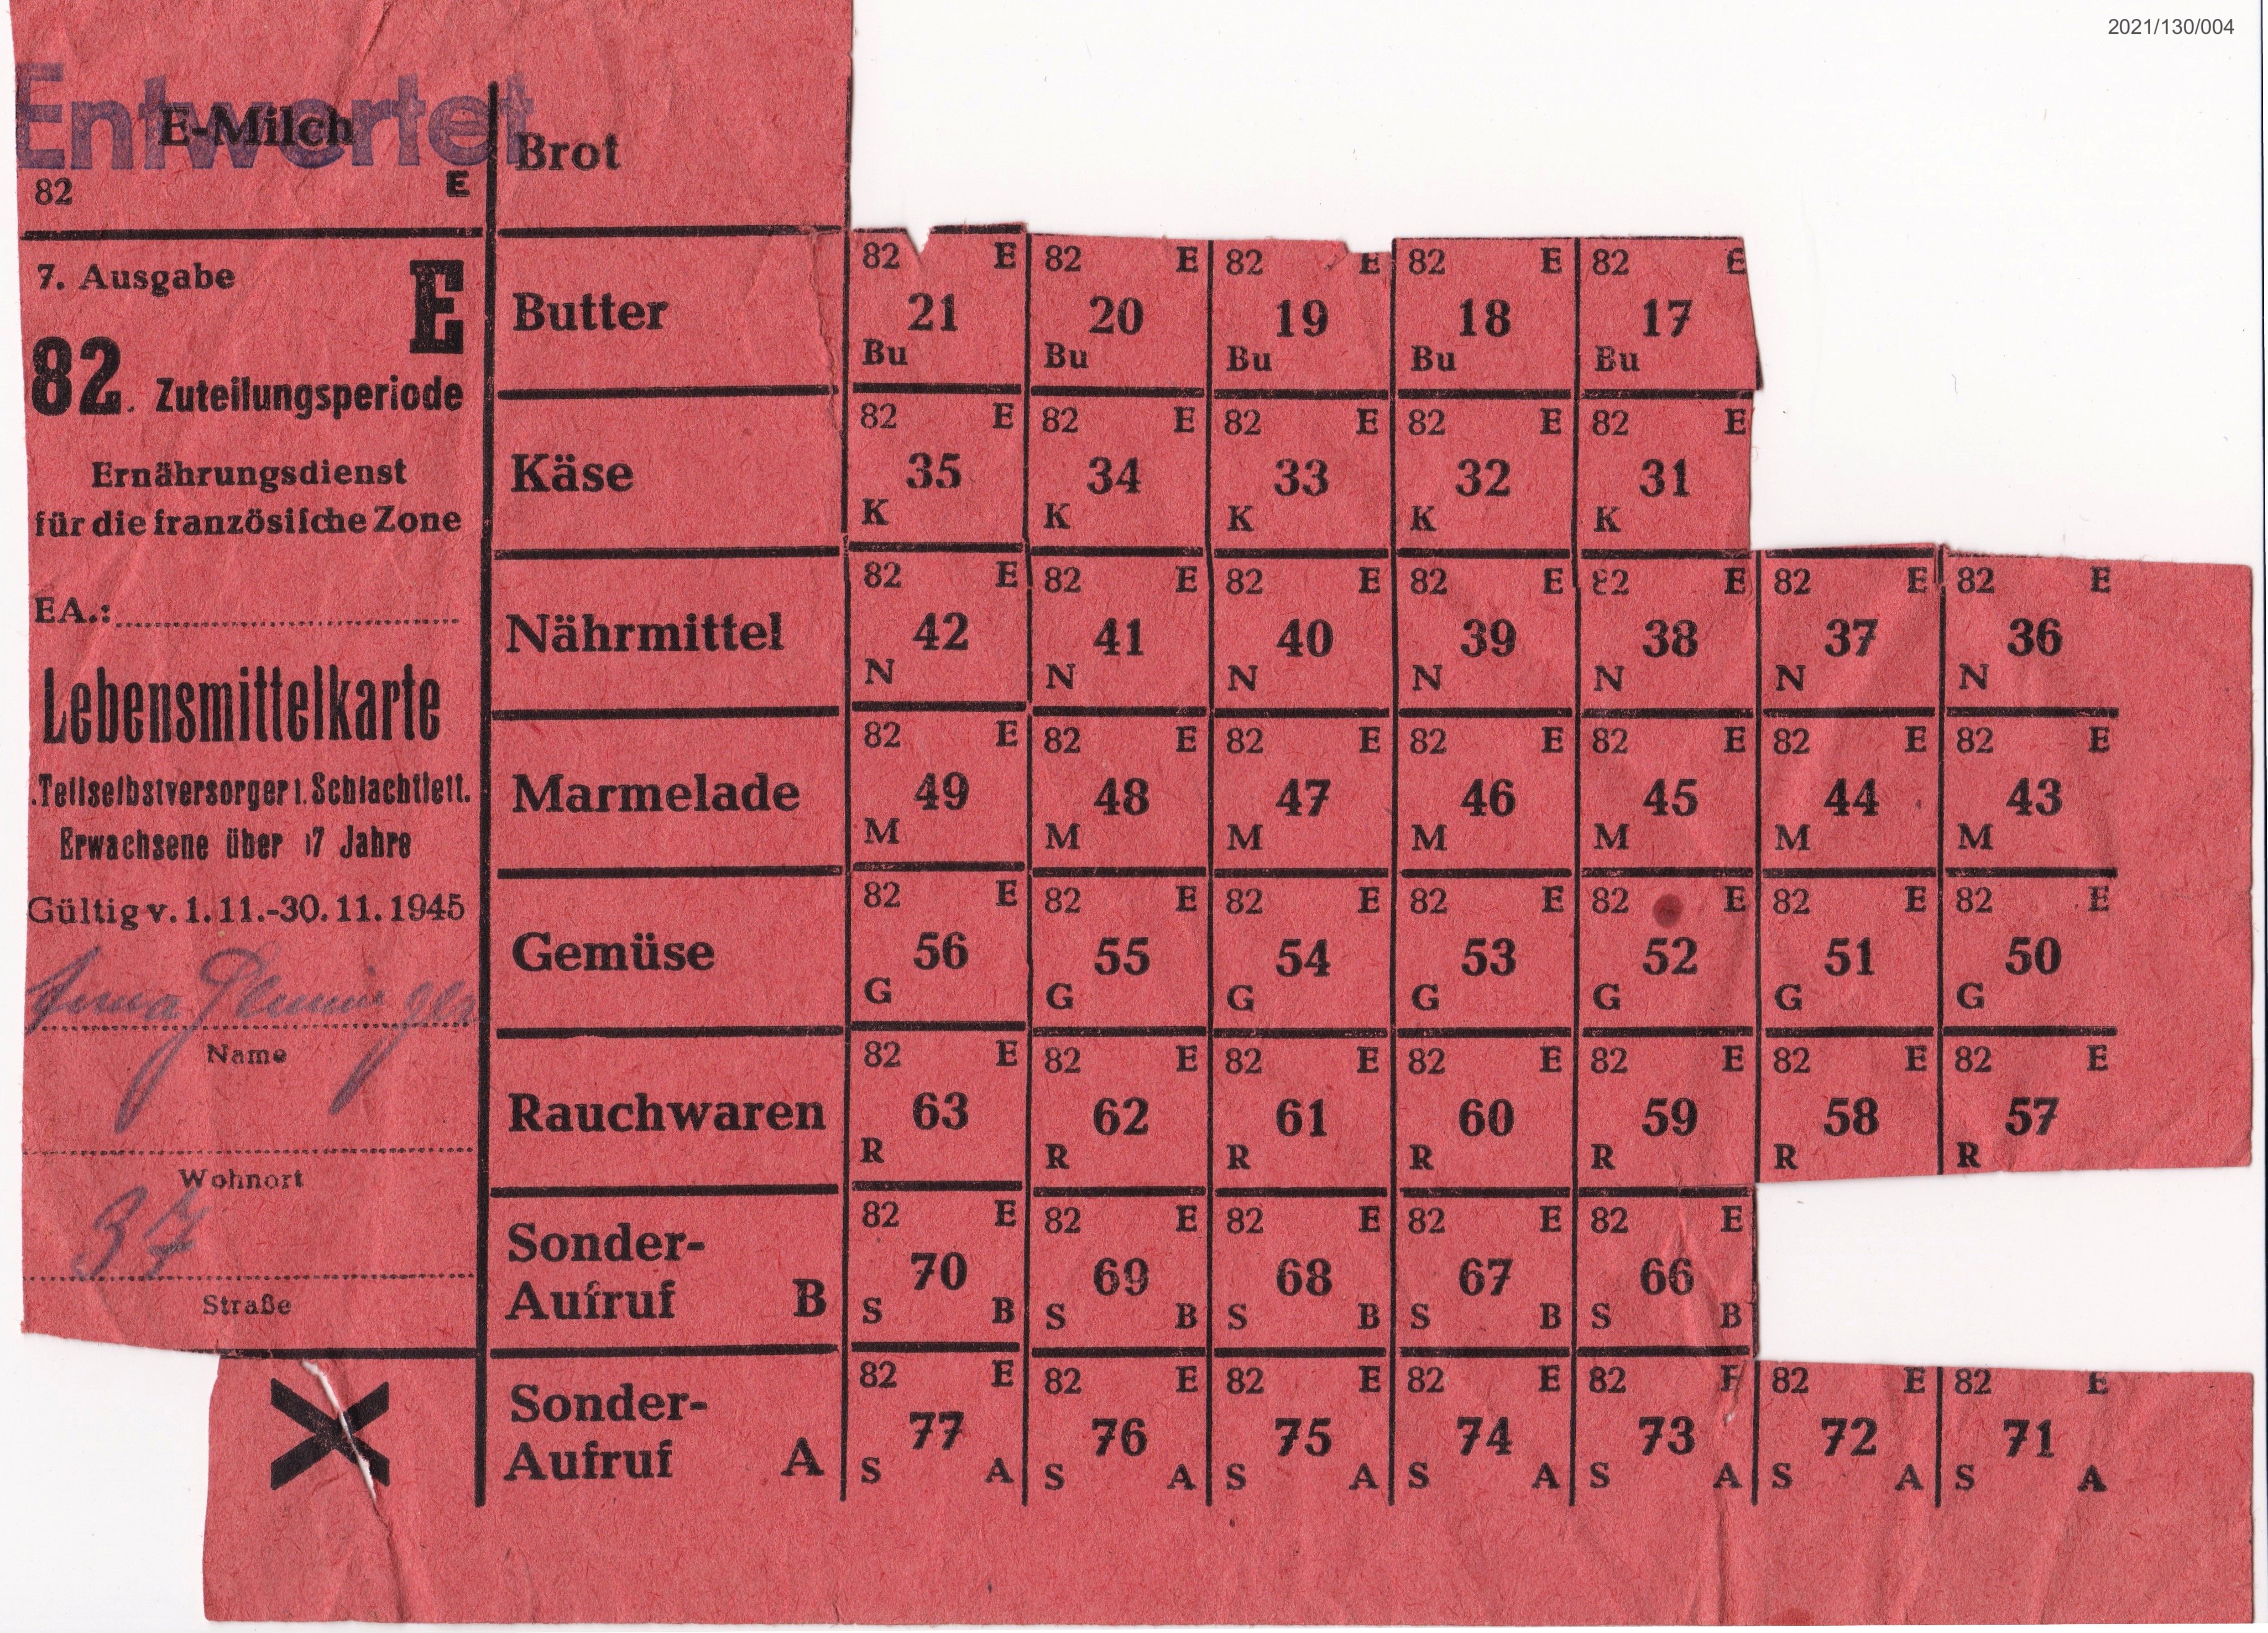 Lebensmittekarte für Teilselbstversorger in Fleisch und Schlachtfetten 1945 50 Abschnitte (Museumsgesellschaft Bad Dürkheim e. V. CC BY-NC-SA)